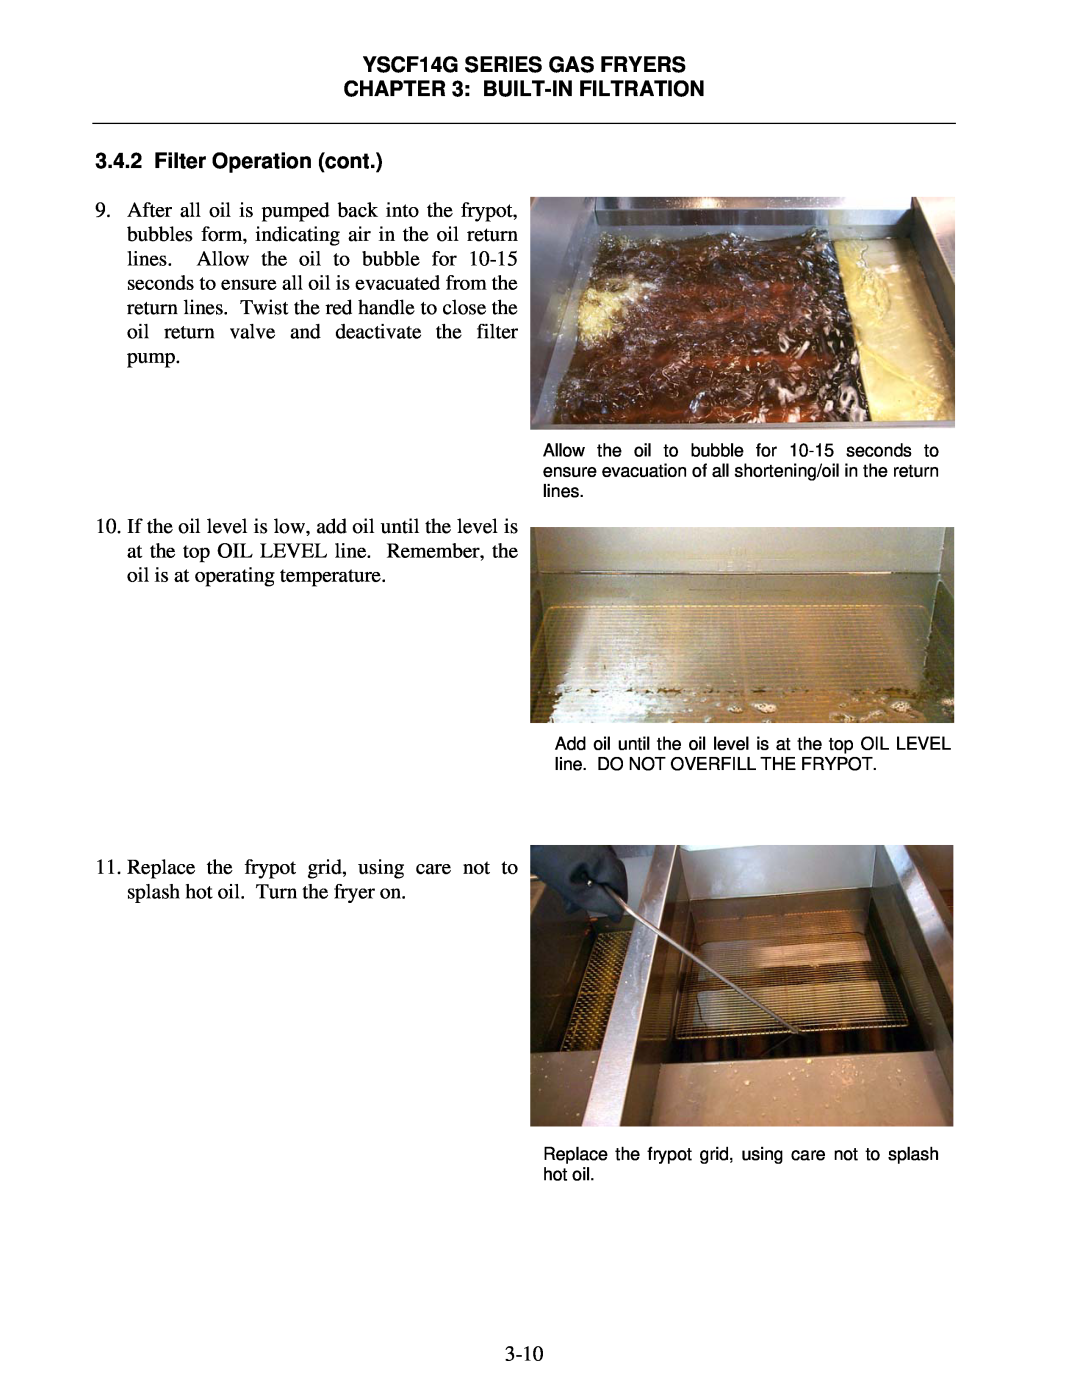 Frymaster YSCF14G operation manual 3-10 